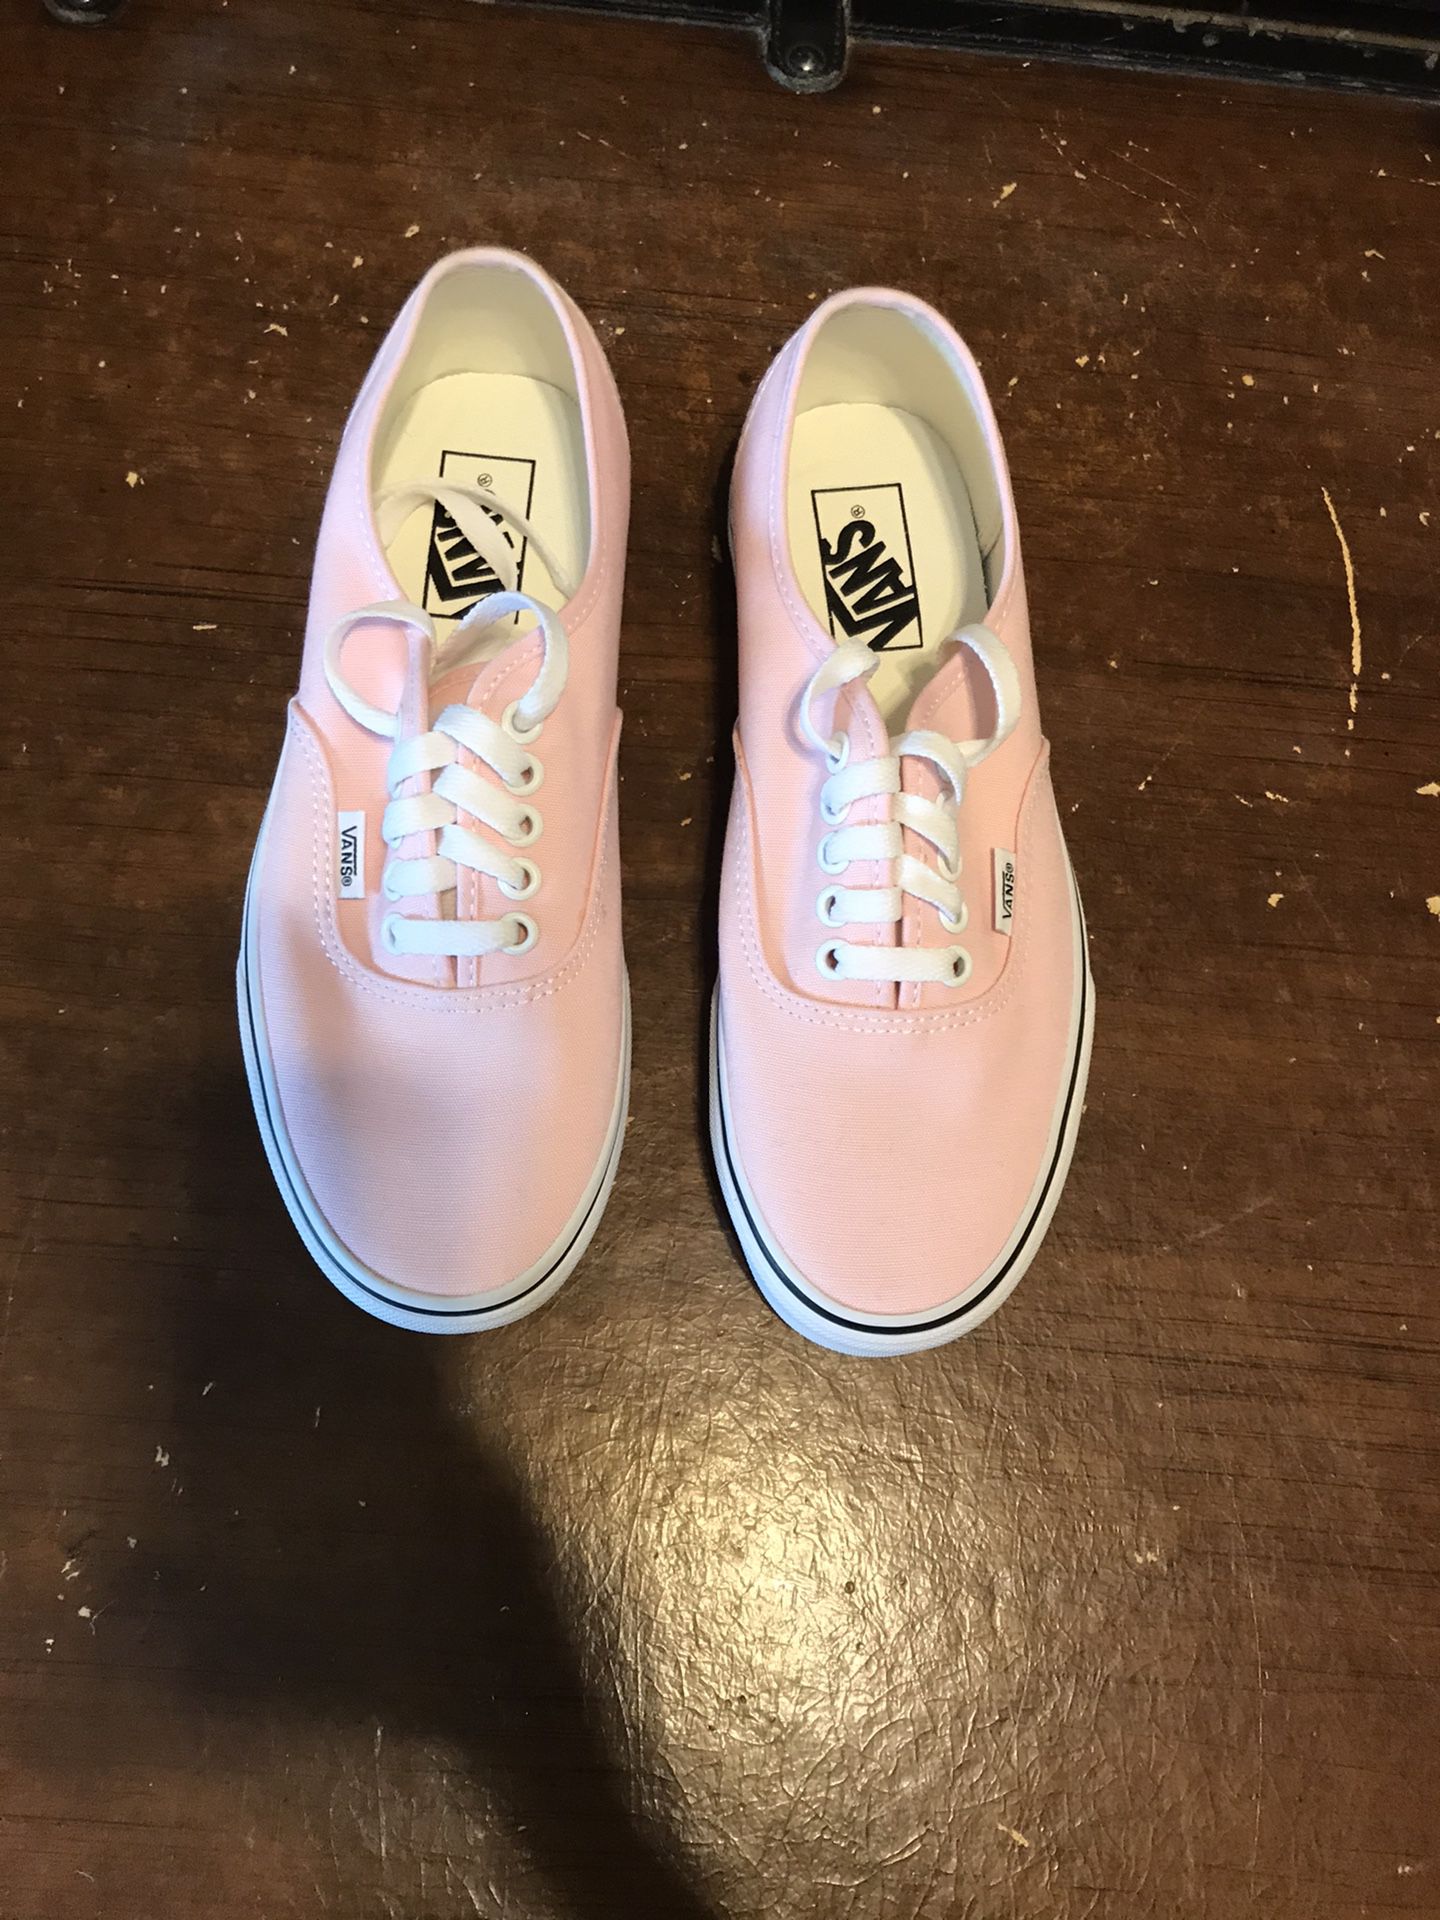 Women’s pink vans size 8 $40.00 brand new never worn